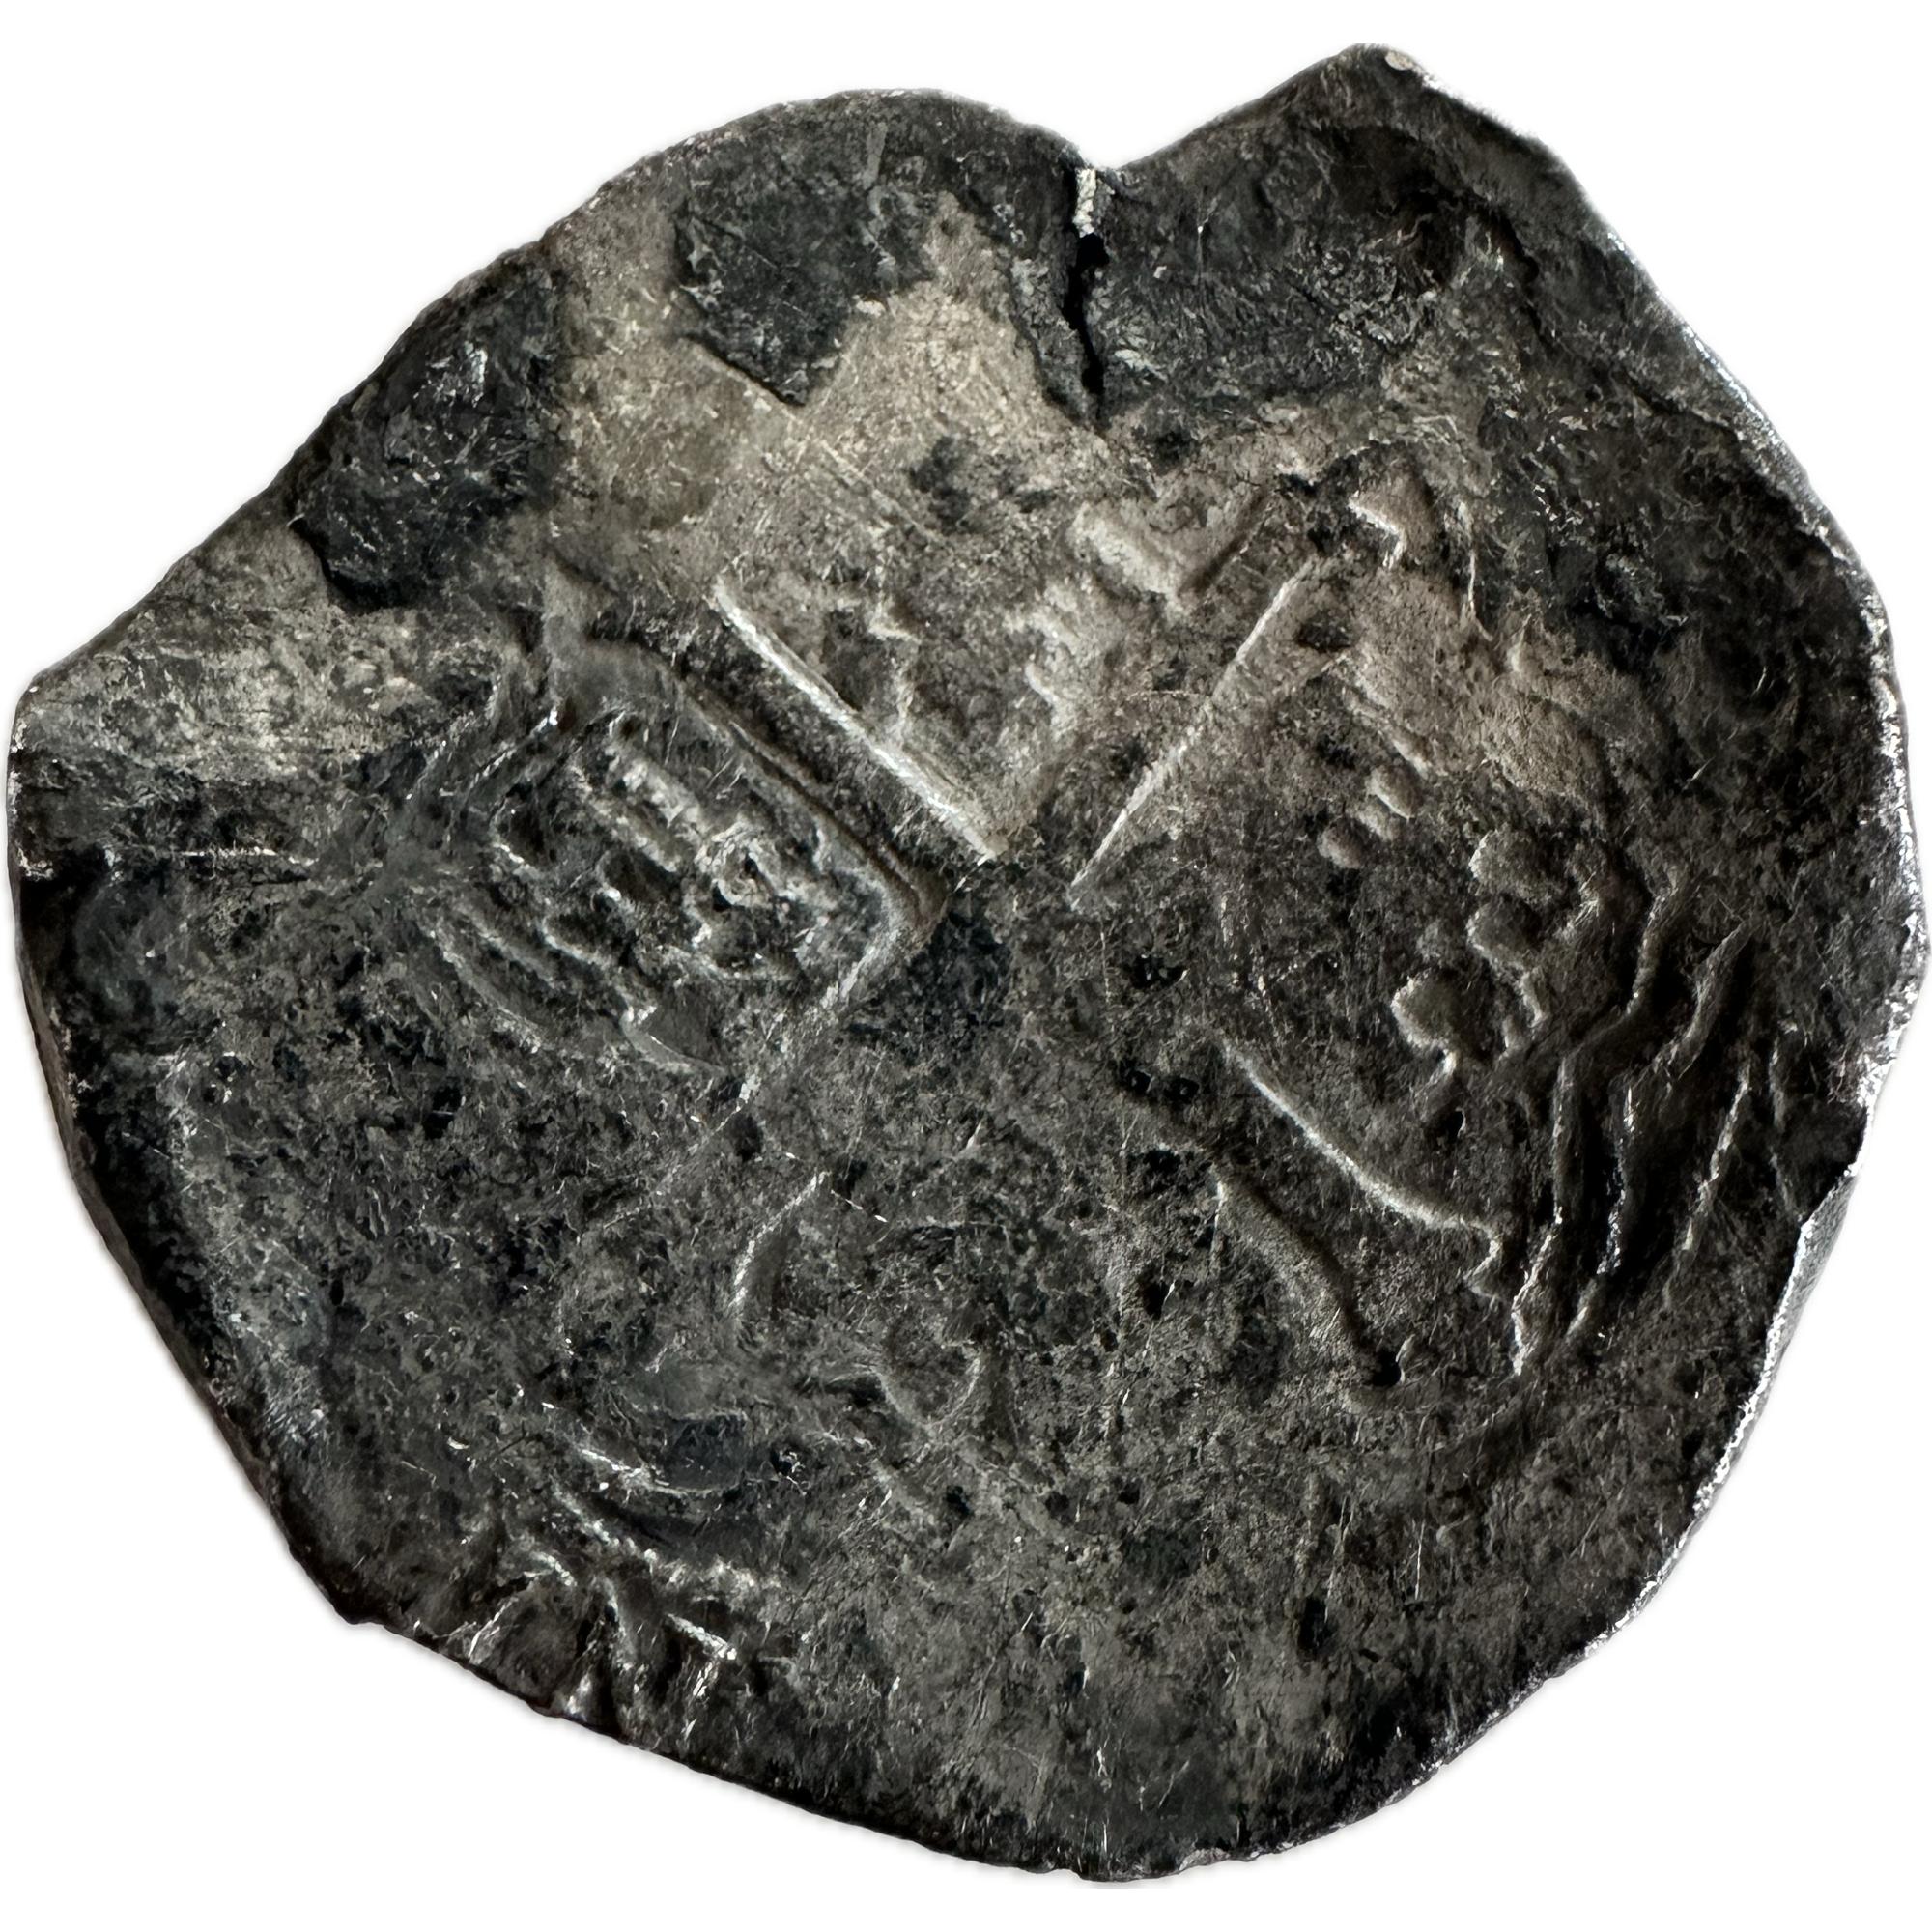 The Concepcion shipwreck of 1641 8 reale silver coin, choice grade, original salvage coin card